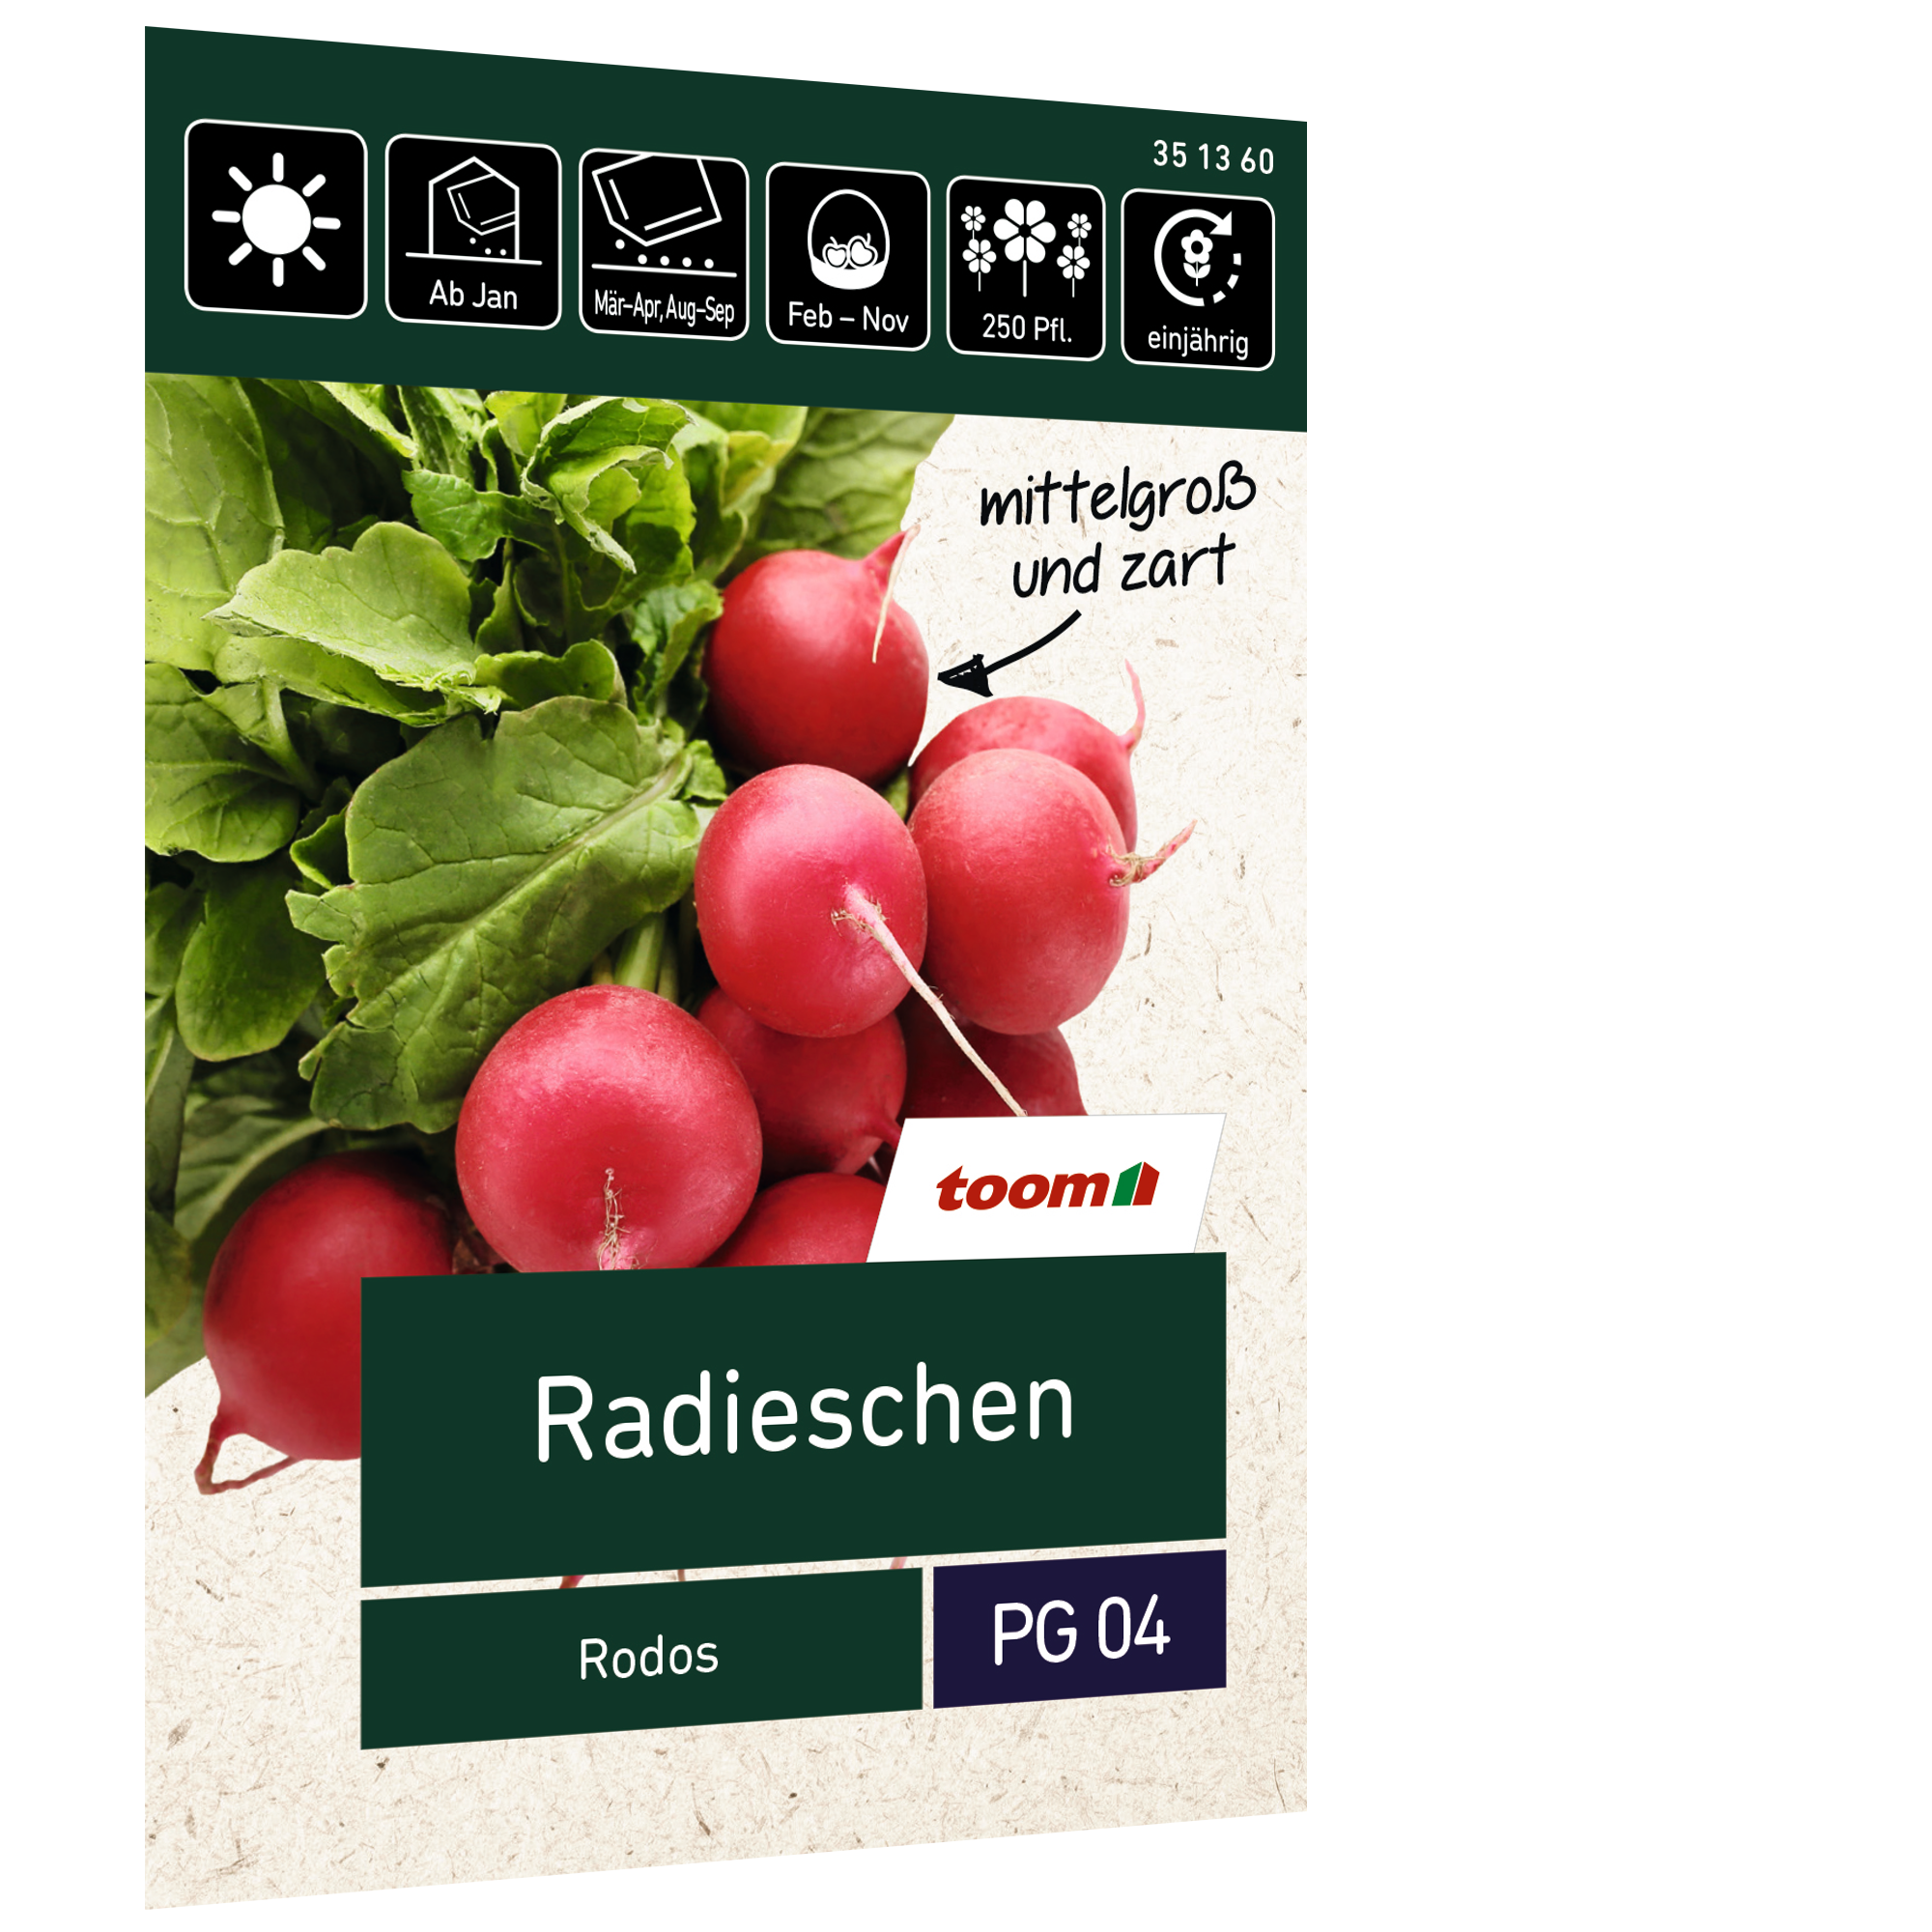 Radieschen 'Rodos' + product picture